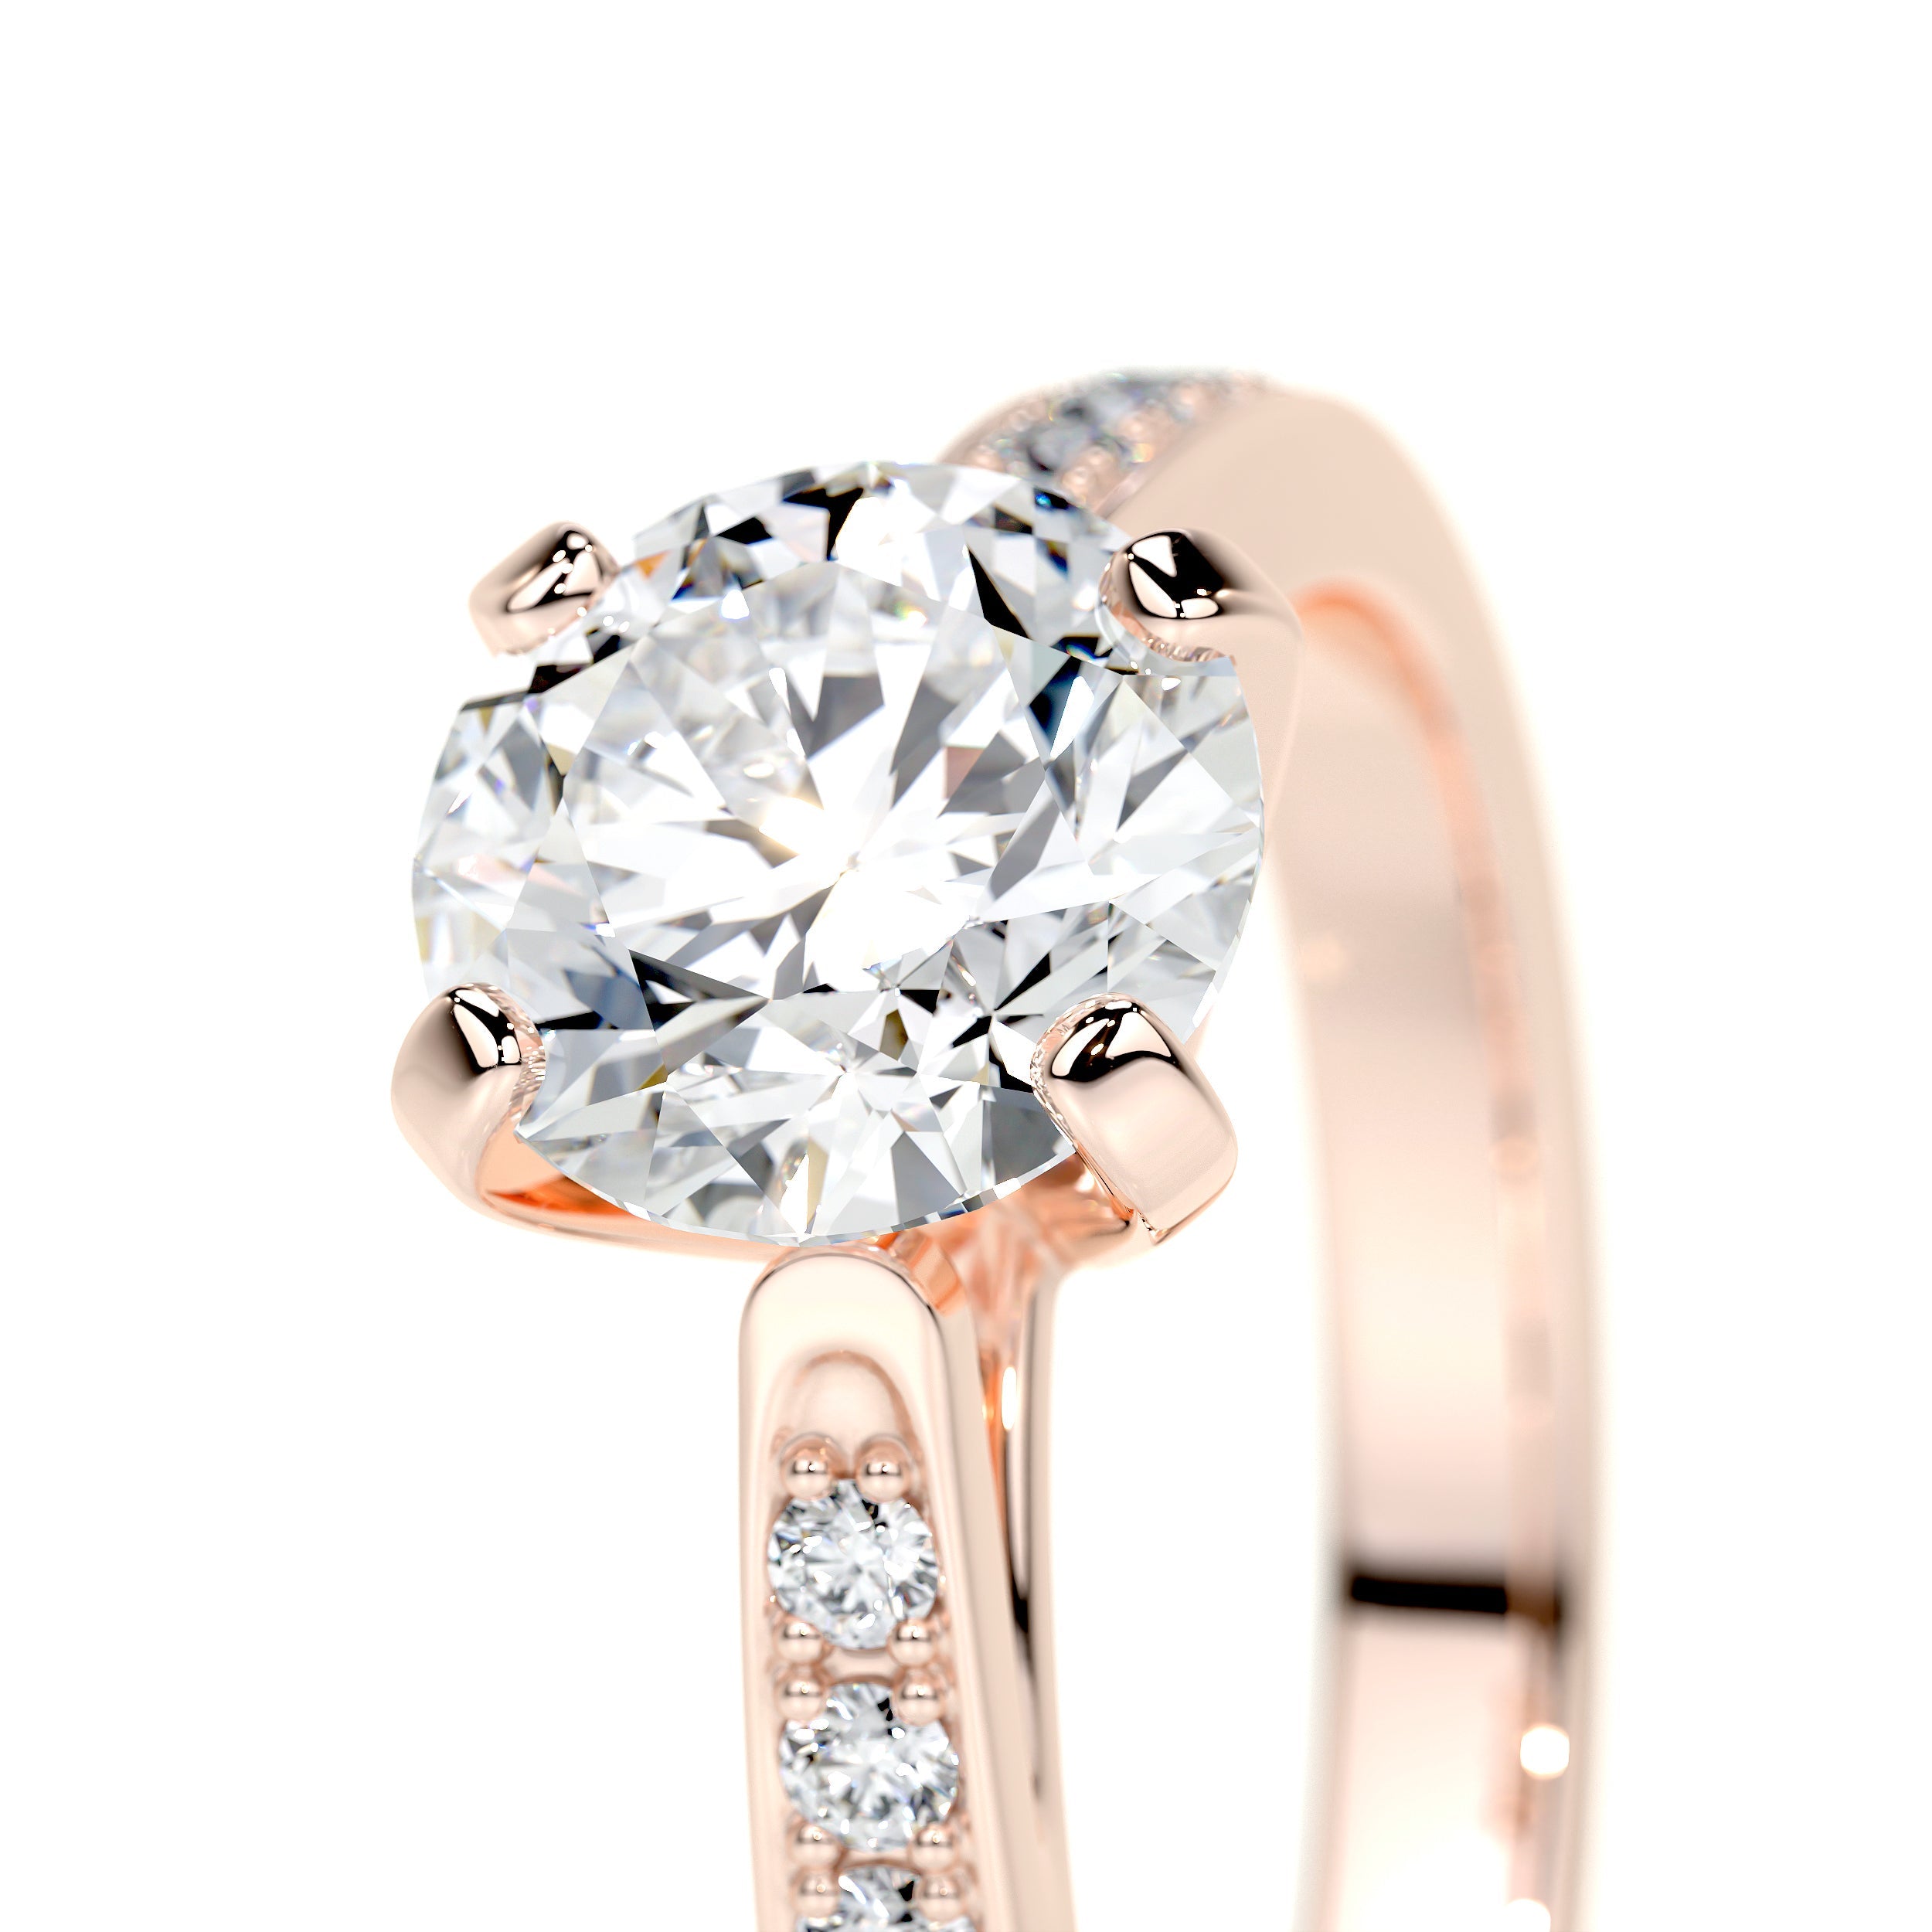 Margaret Lab Grown Diamond Ring   (1.35 Carat) -14K Rose Gold